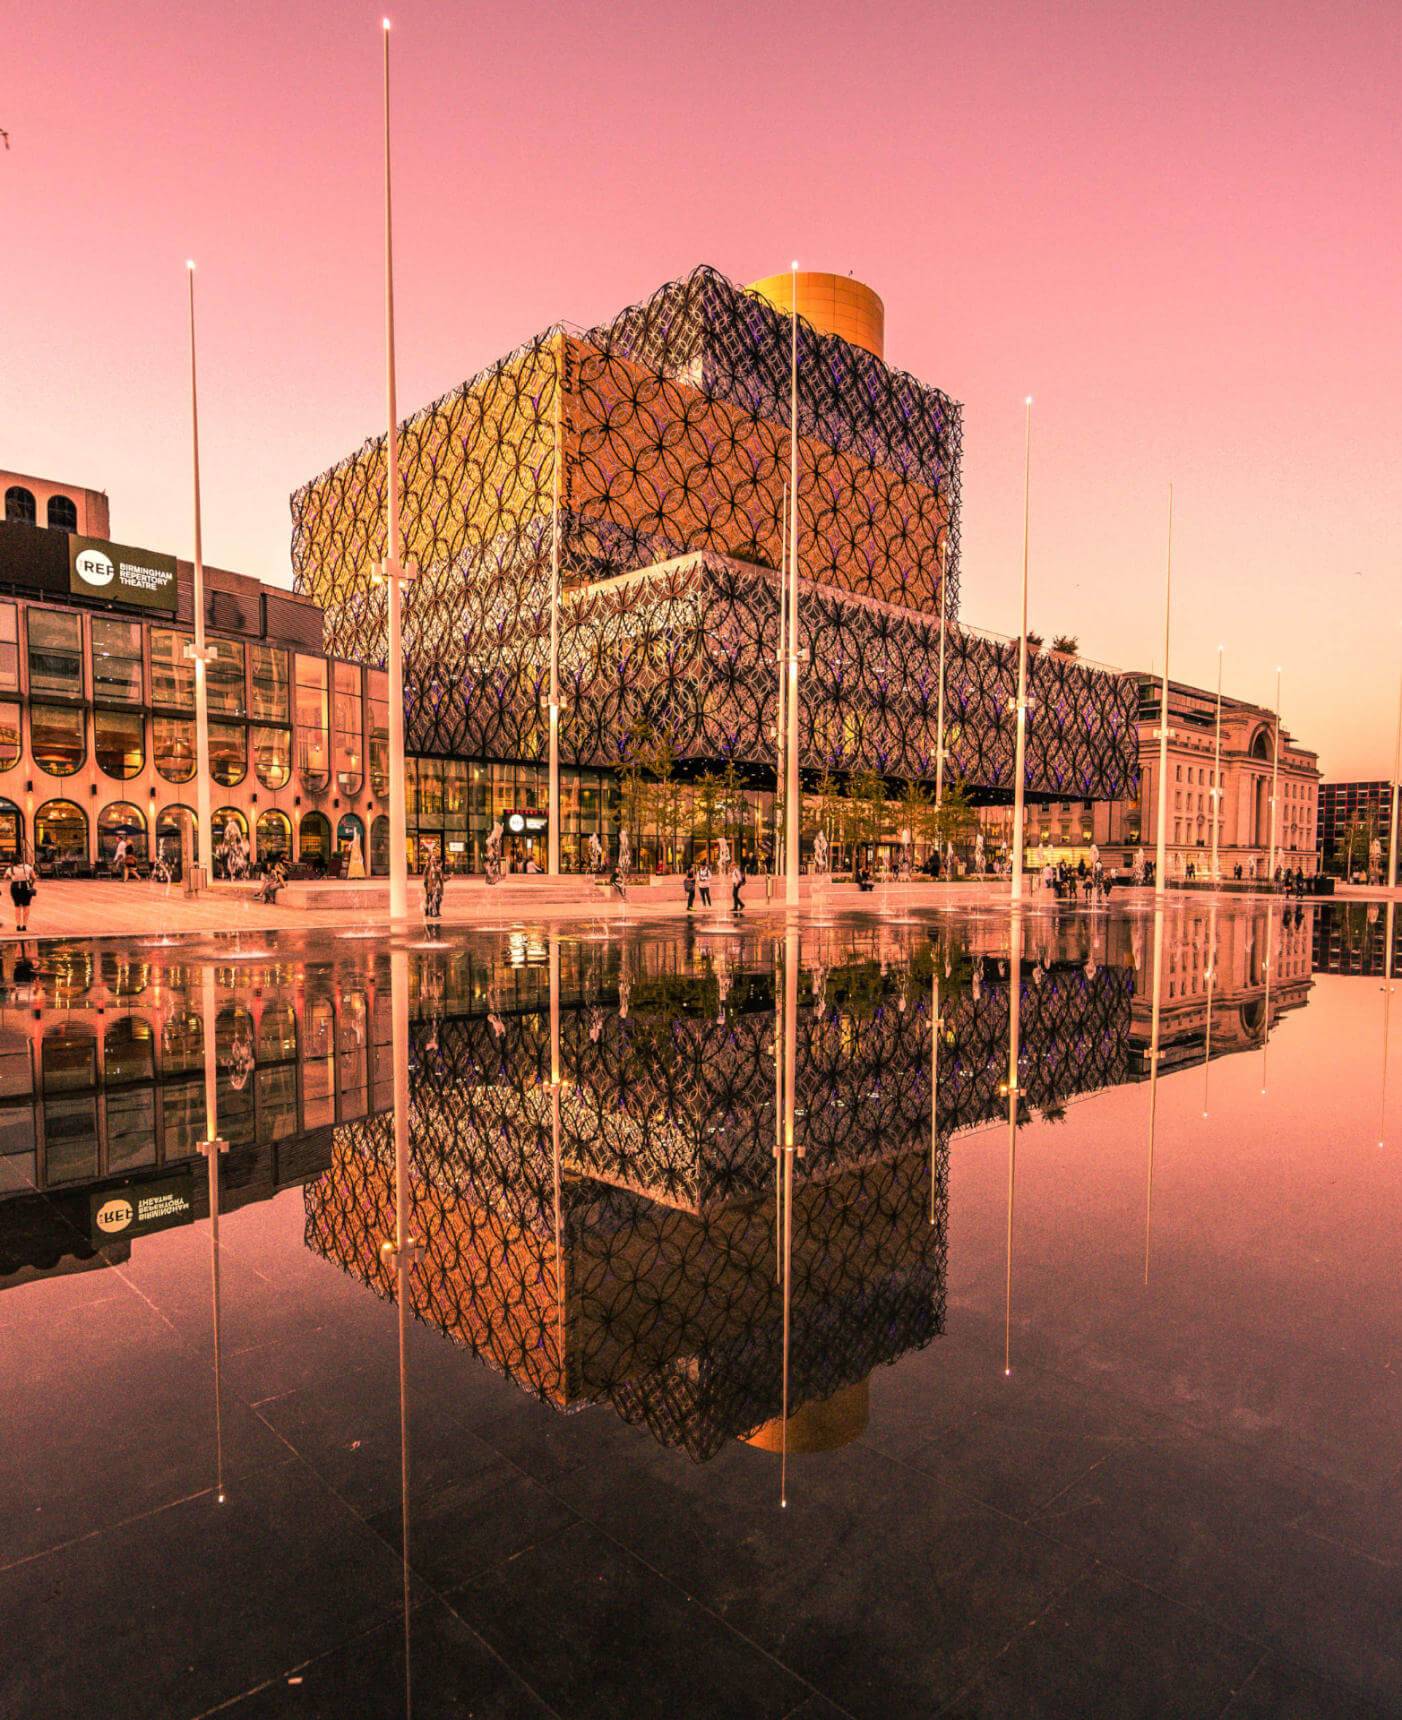 Die Library of Birmingham bei Sonnenuntergang – einer der traumhaftesten Orte in der britischen Millionenstadt. Bild und Text: Tobias Hoiten